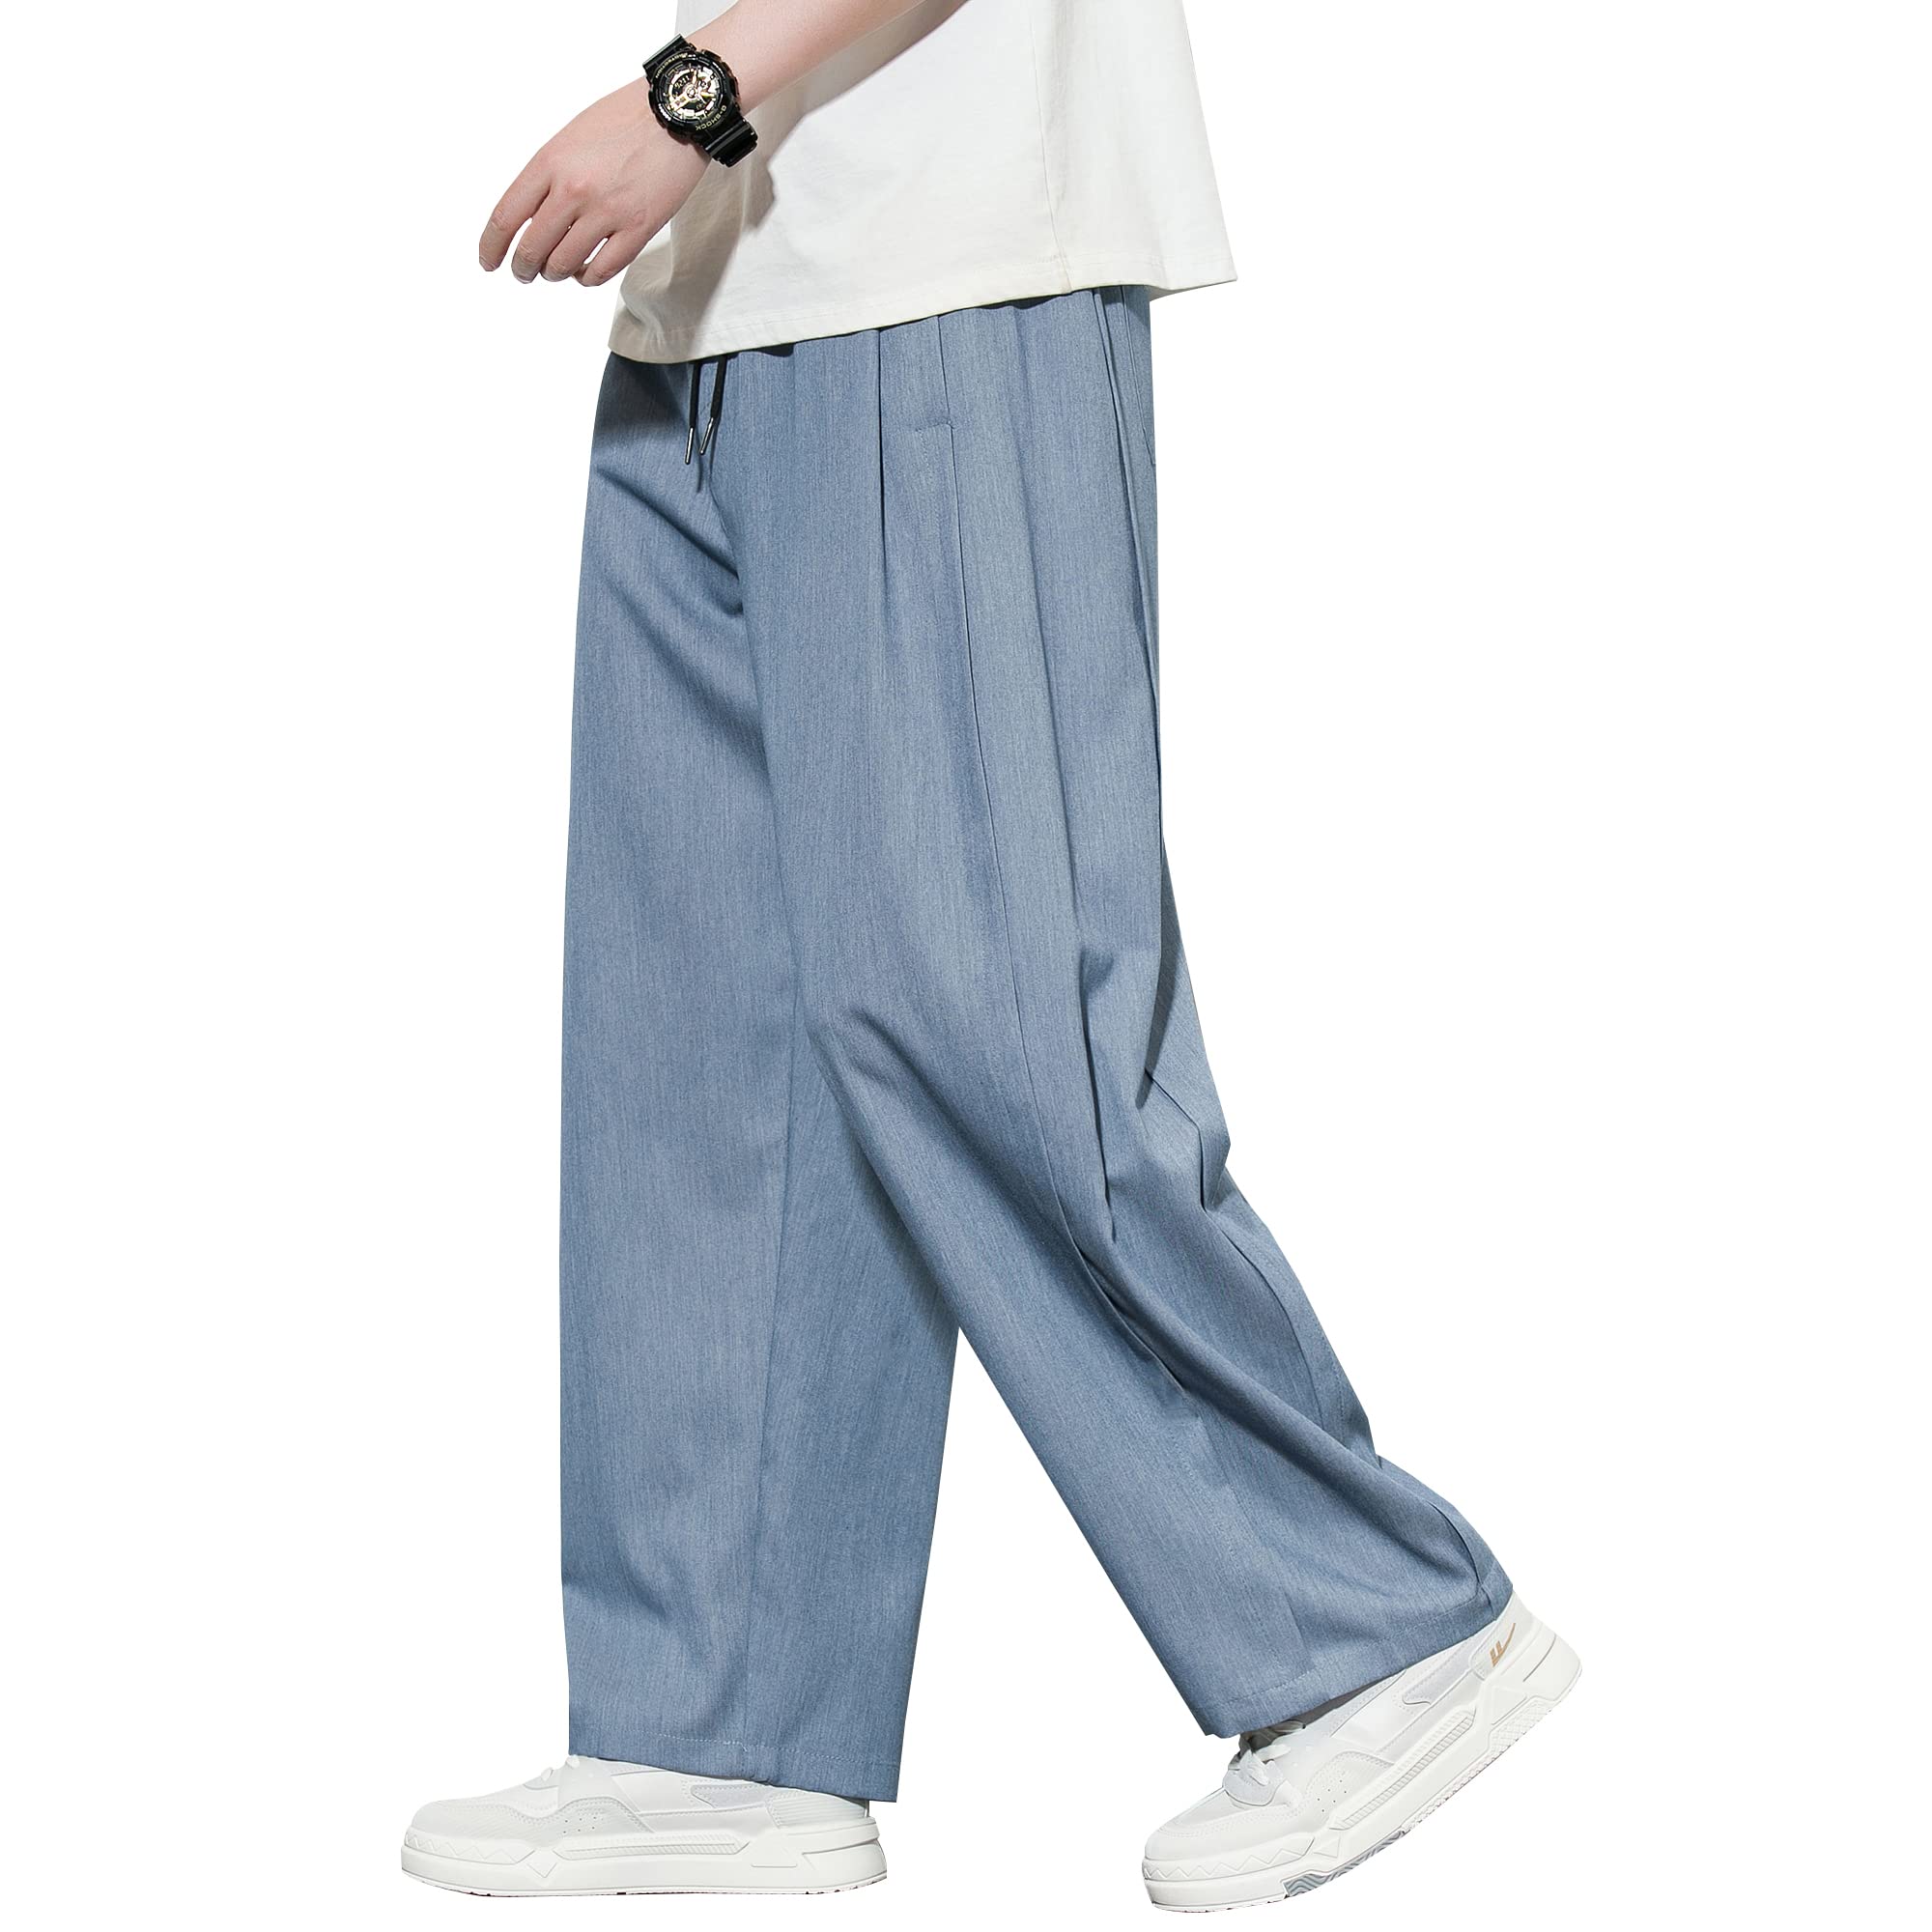 HMT ワイドパンツ メンズ 夏用 ズボン ガウチョパンツ 涼しい スラックス 冷感 夏服 ずぼん 大きいサイズ ゆったり ボトムス 無地 ストレ